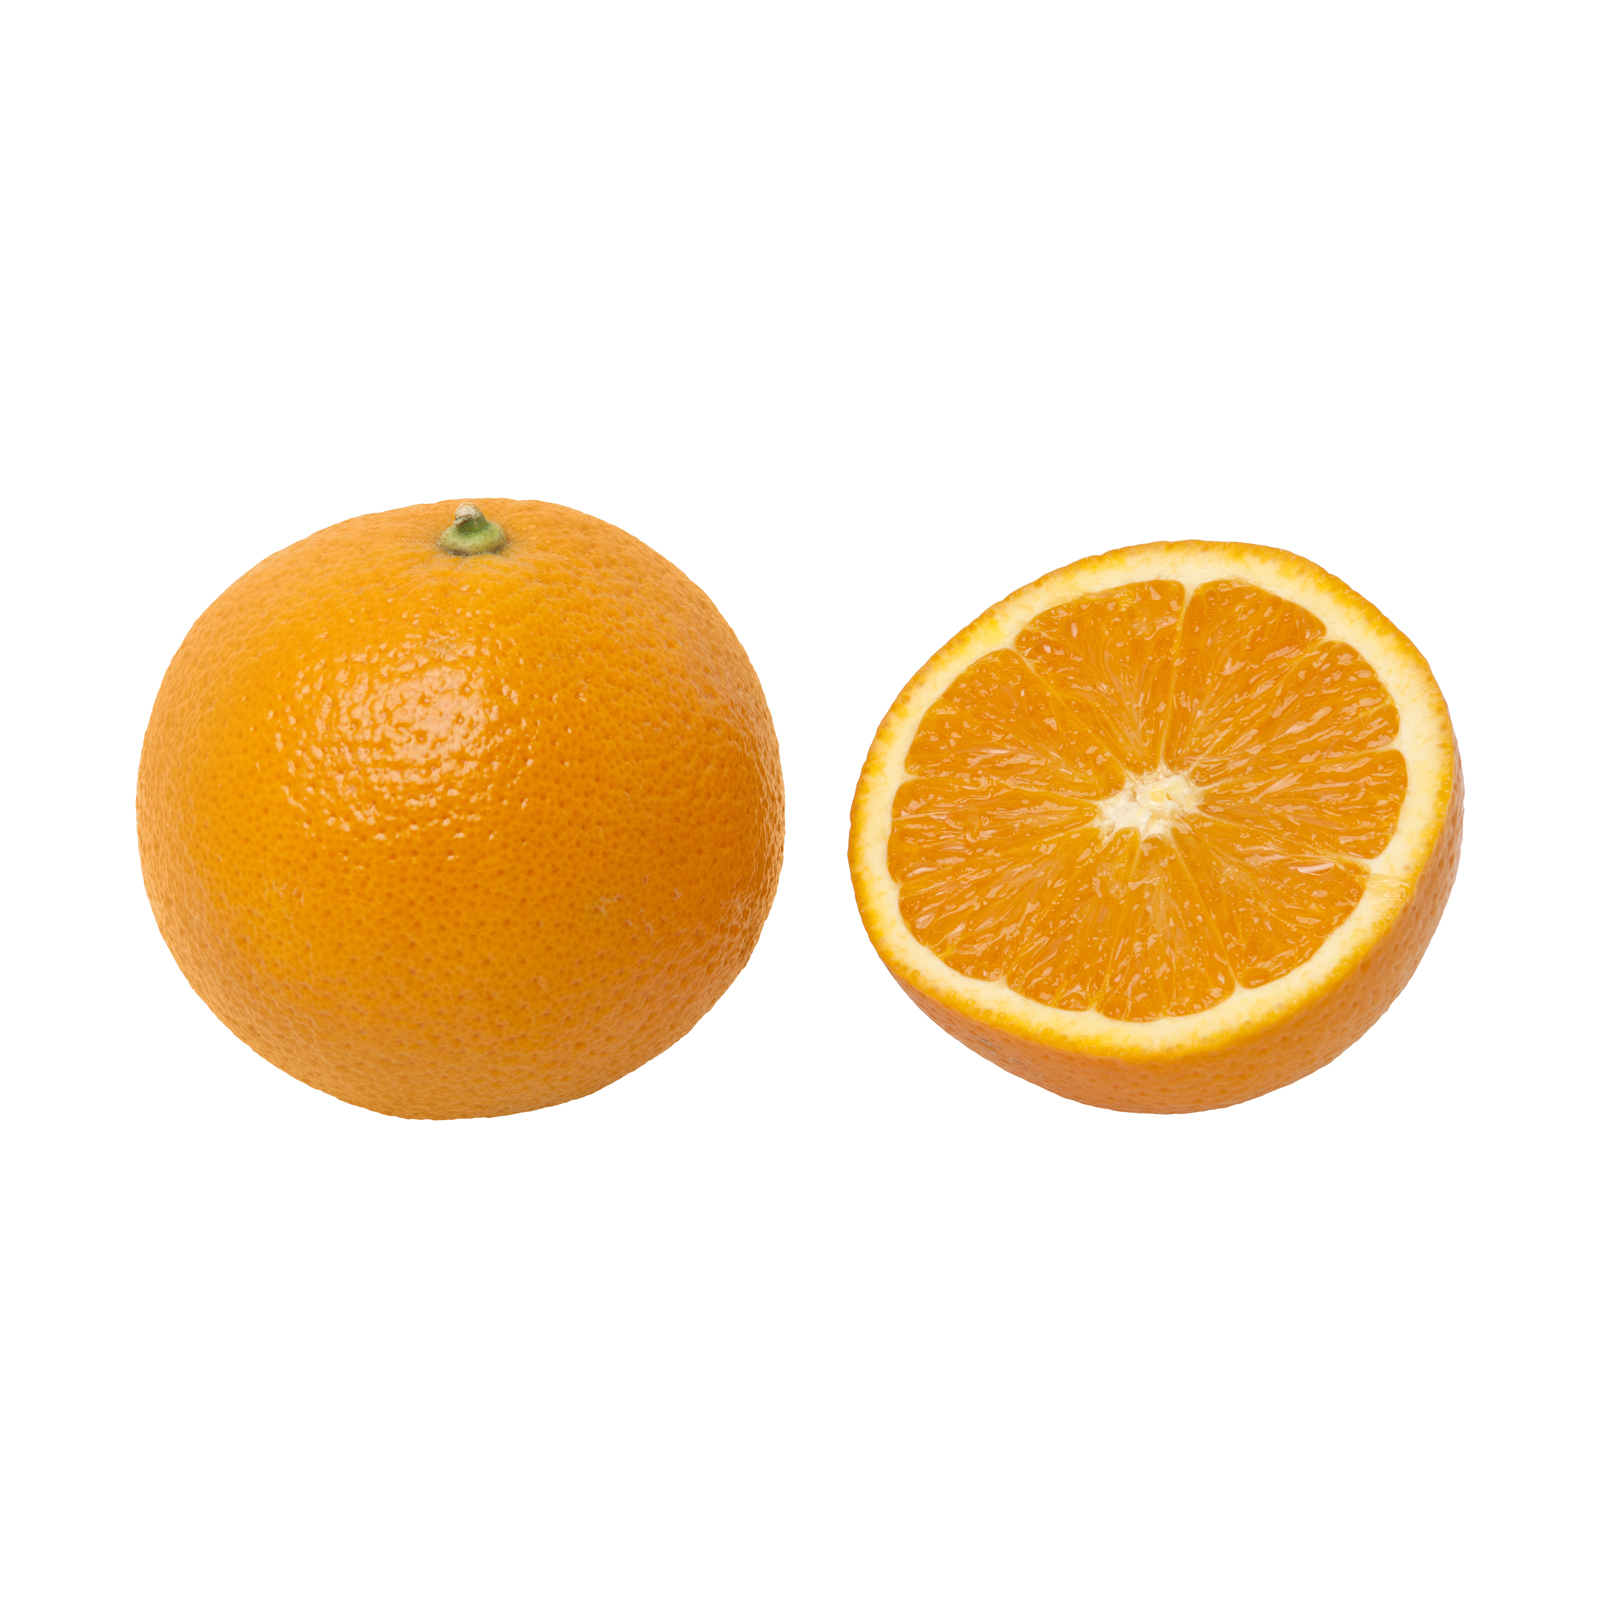 پرتقال آبگیری شمال درجه یک - 15 کیلوگرم